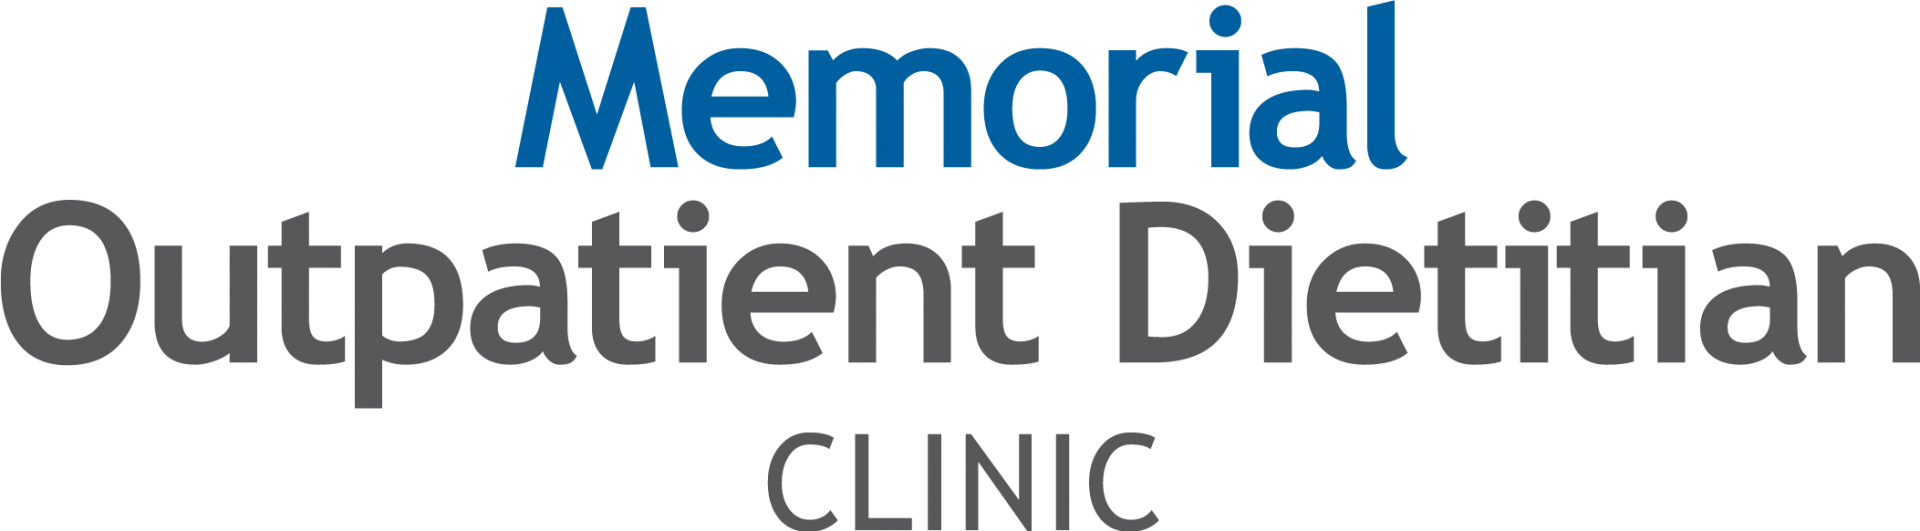 Memorial Outpatient Dietitian Clinic